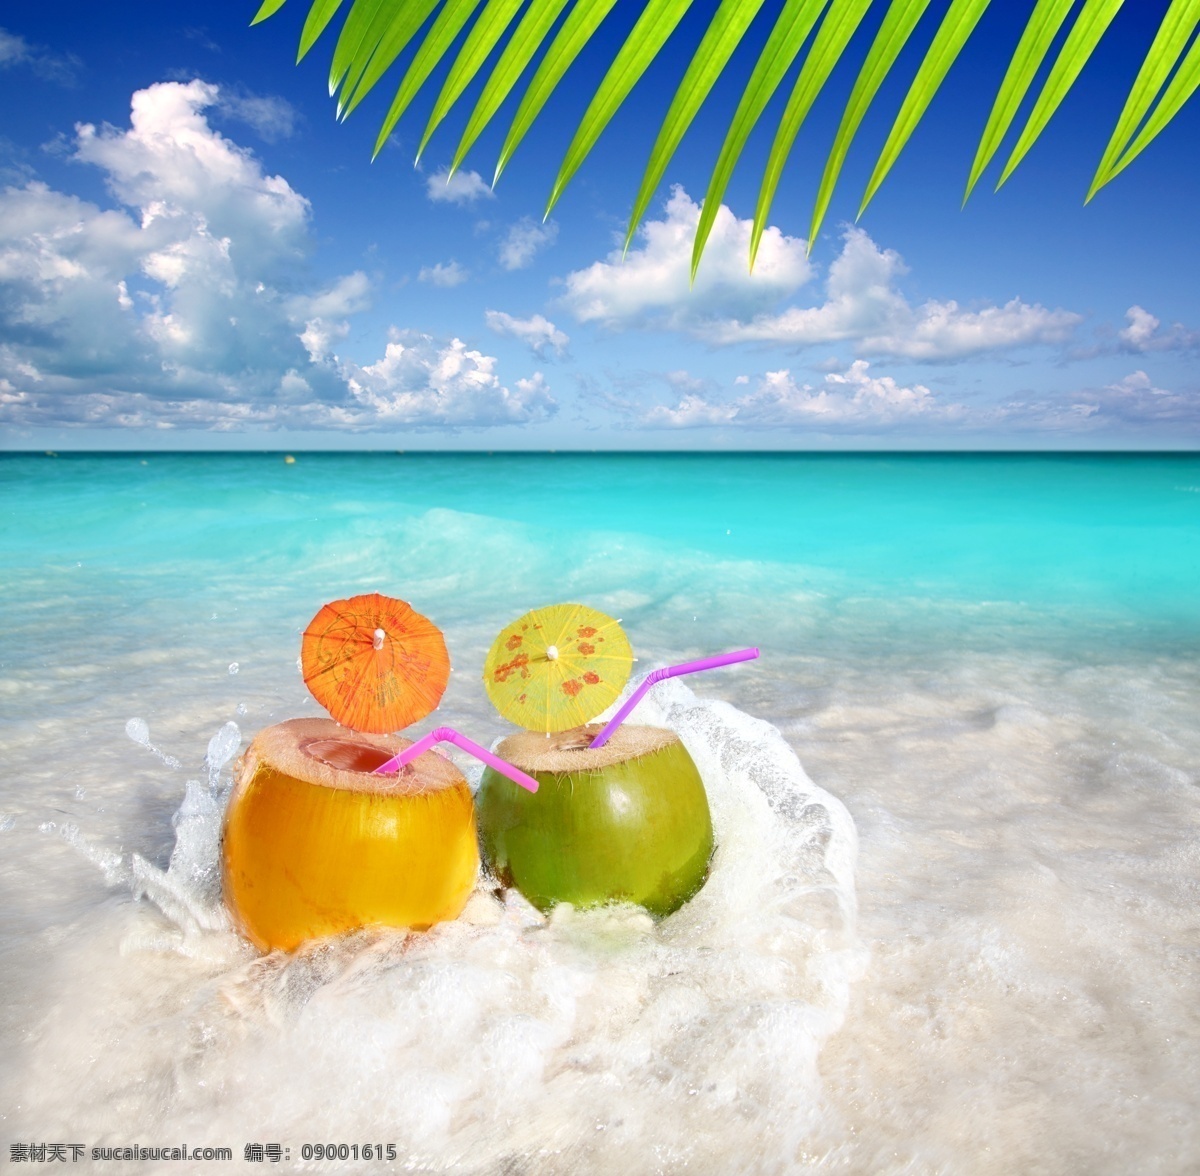 椰子 海滩 风景 椰子汁 海边 海滩风景 大海风景 海面风景 美丽风景 大海图片 风景图片